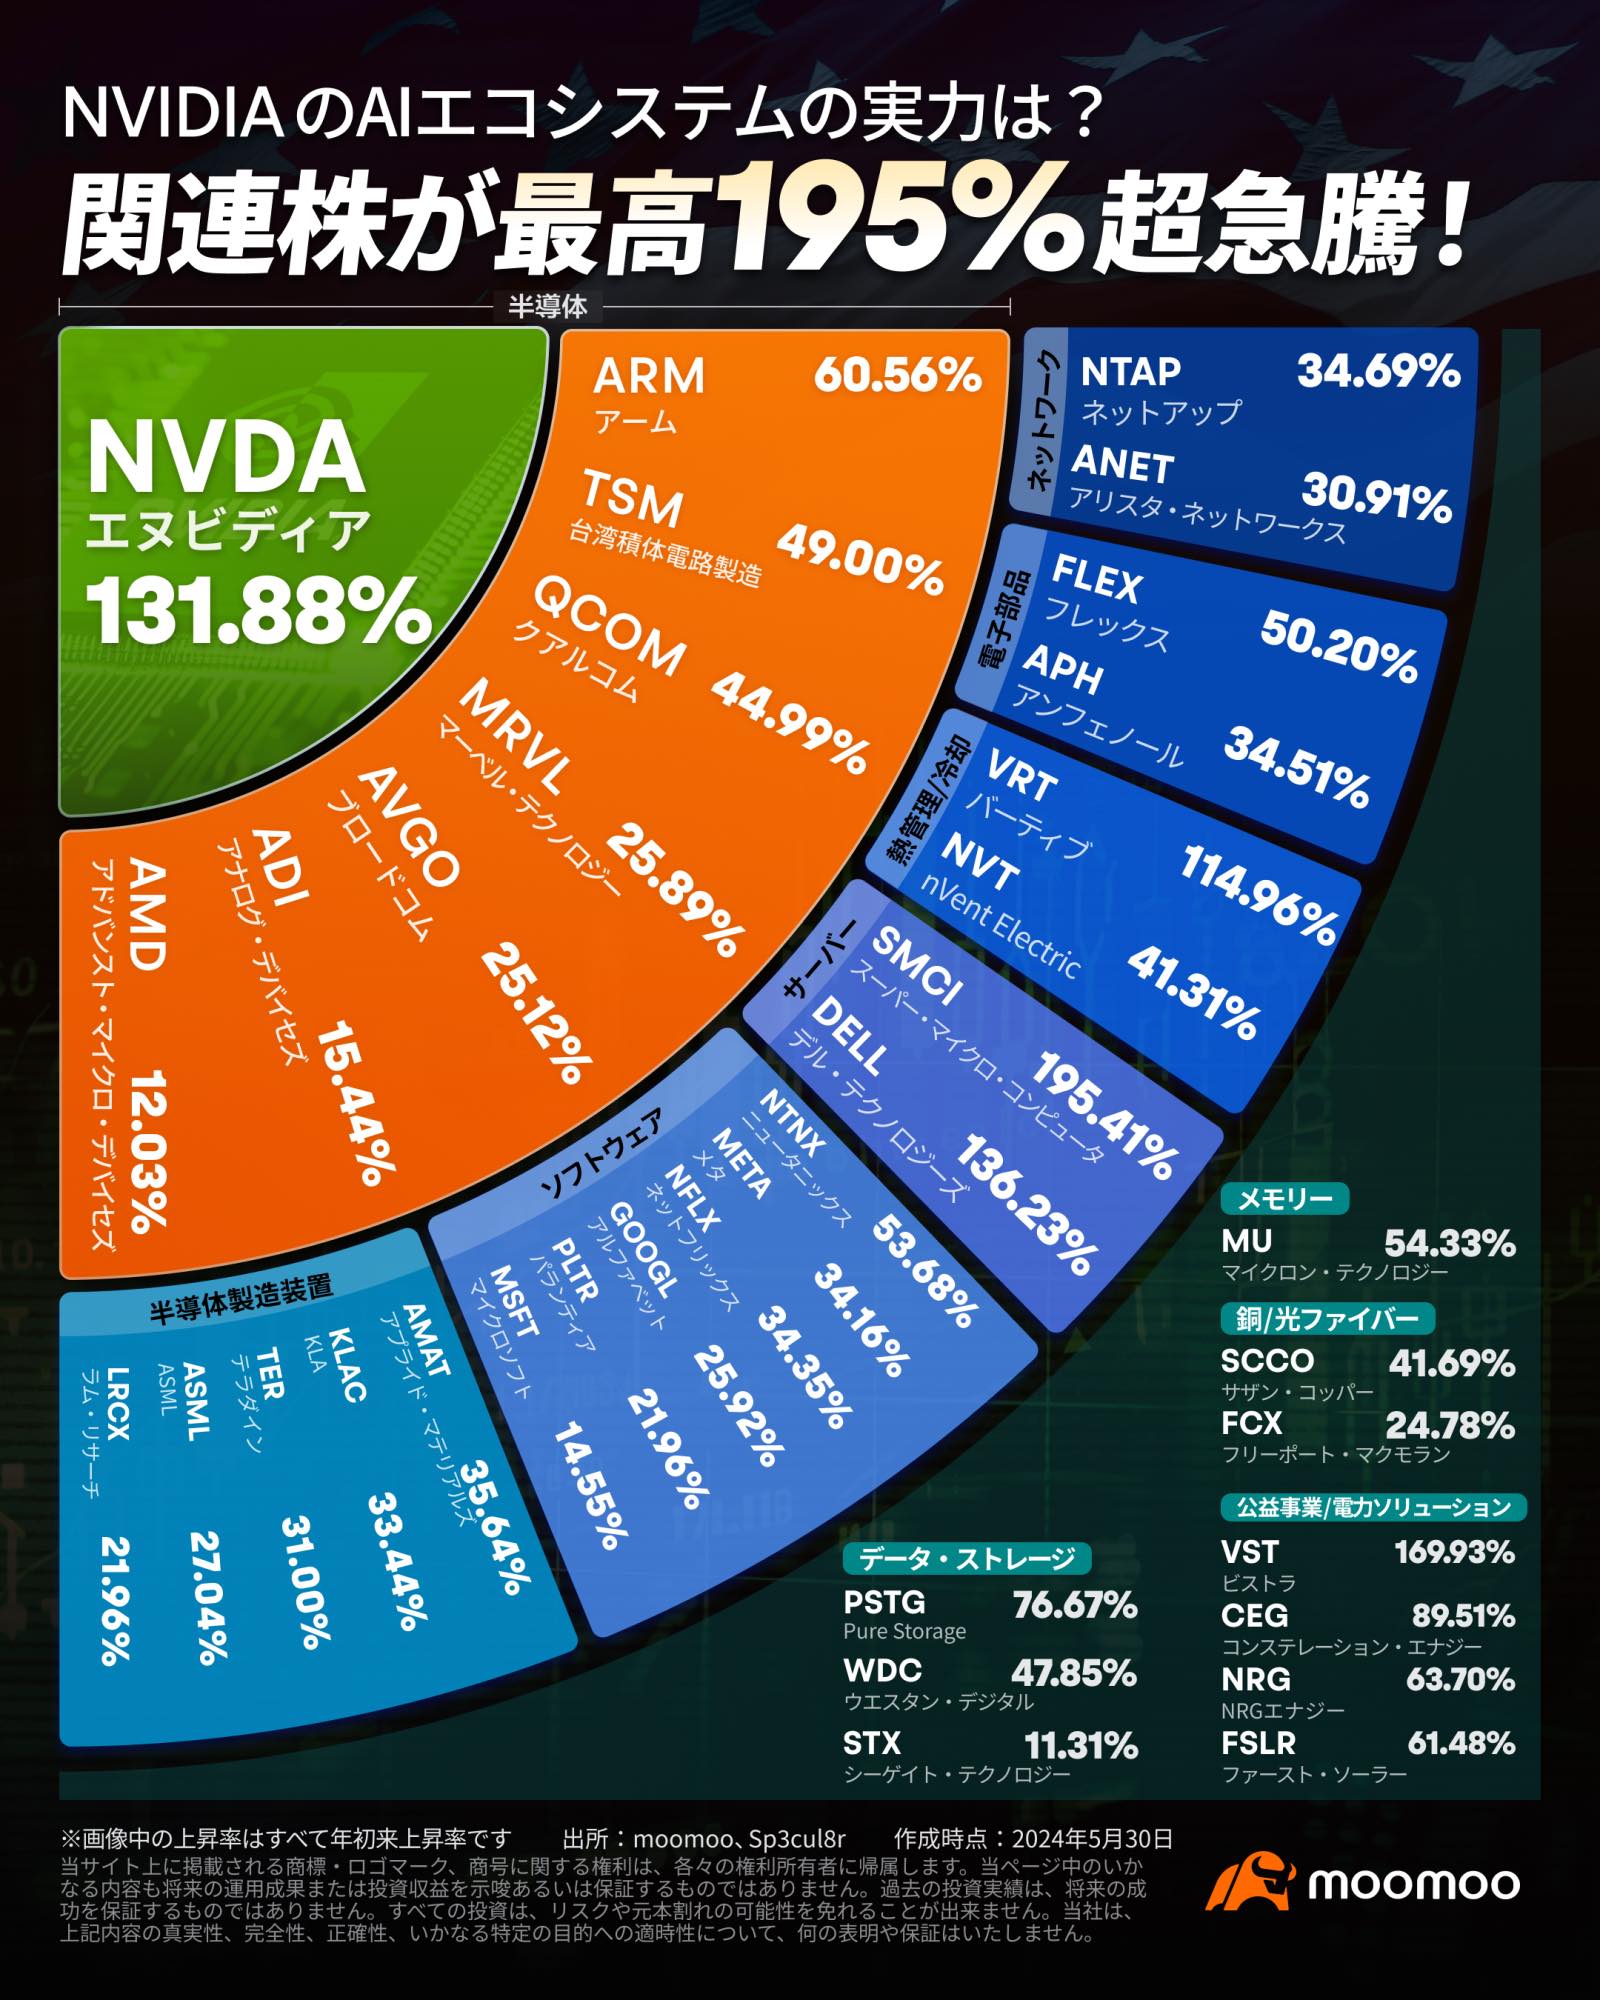 NVIDIA 相关股票增长迅速 ❣️